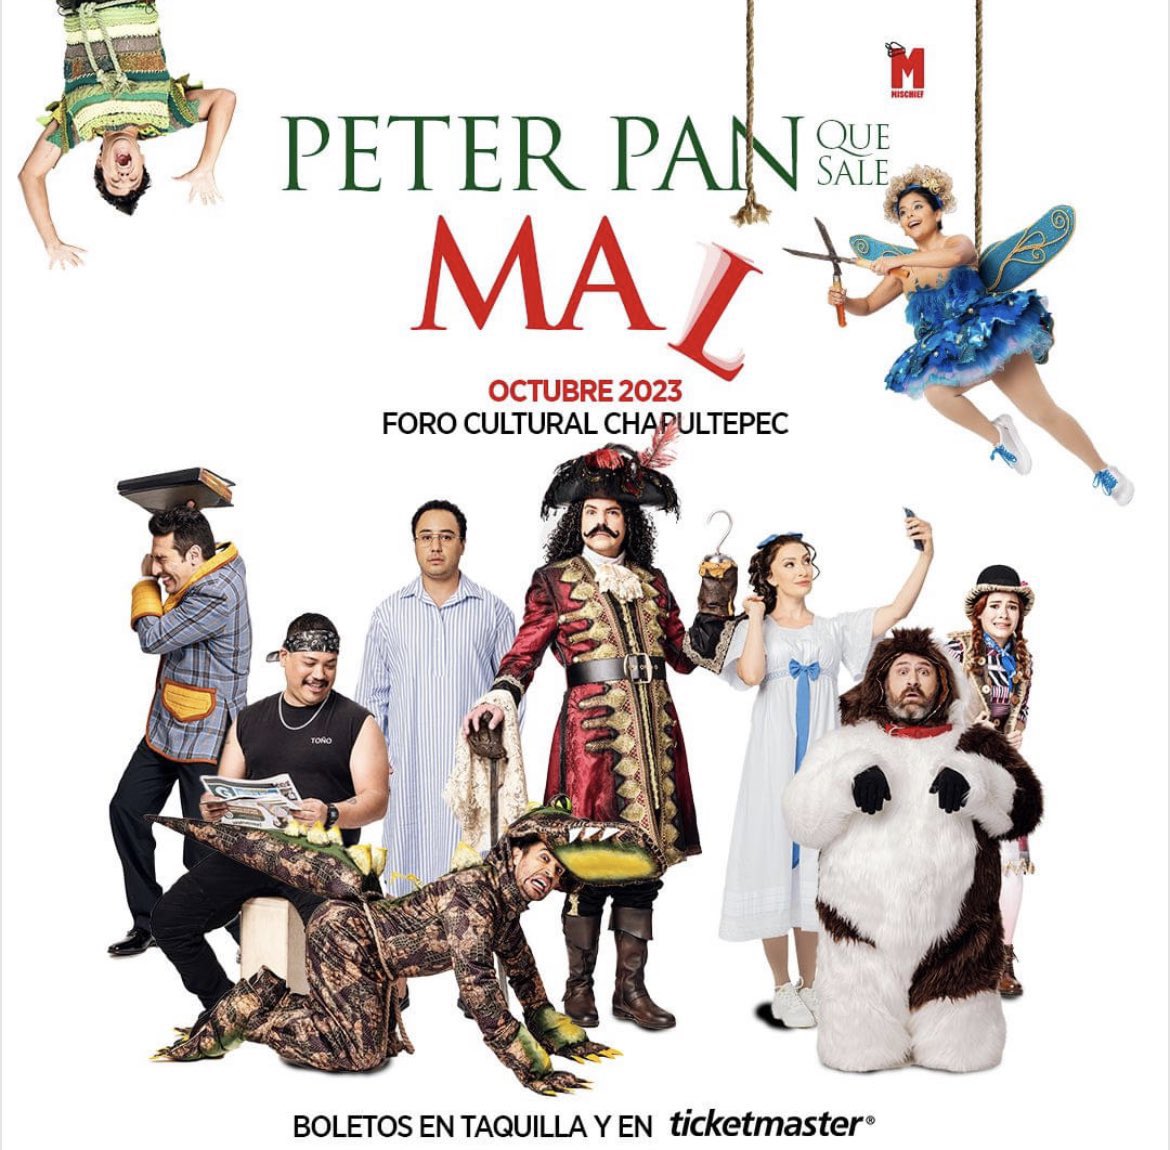 Gana un pase doble para #PeterPanQueSaleMal hoy a las 5:00 pm, RT y ❤️, comenta debajo de este post tu nombre completo, dirección y alcaldía del recinto, nombre de los productores y quien es el autor de Peter Pan junto a tu personaje favorito.

#LemonMeLlevaAlTeatro 🍋